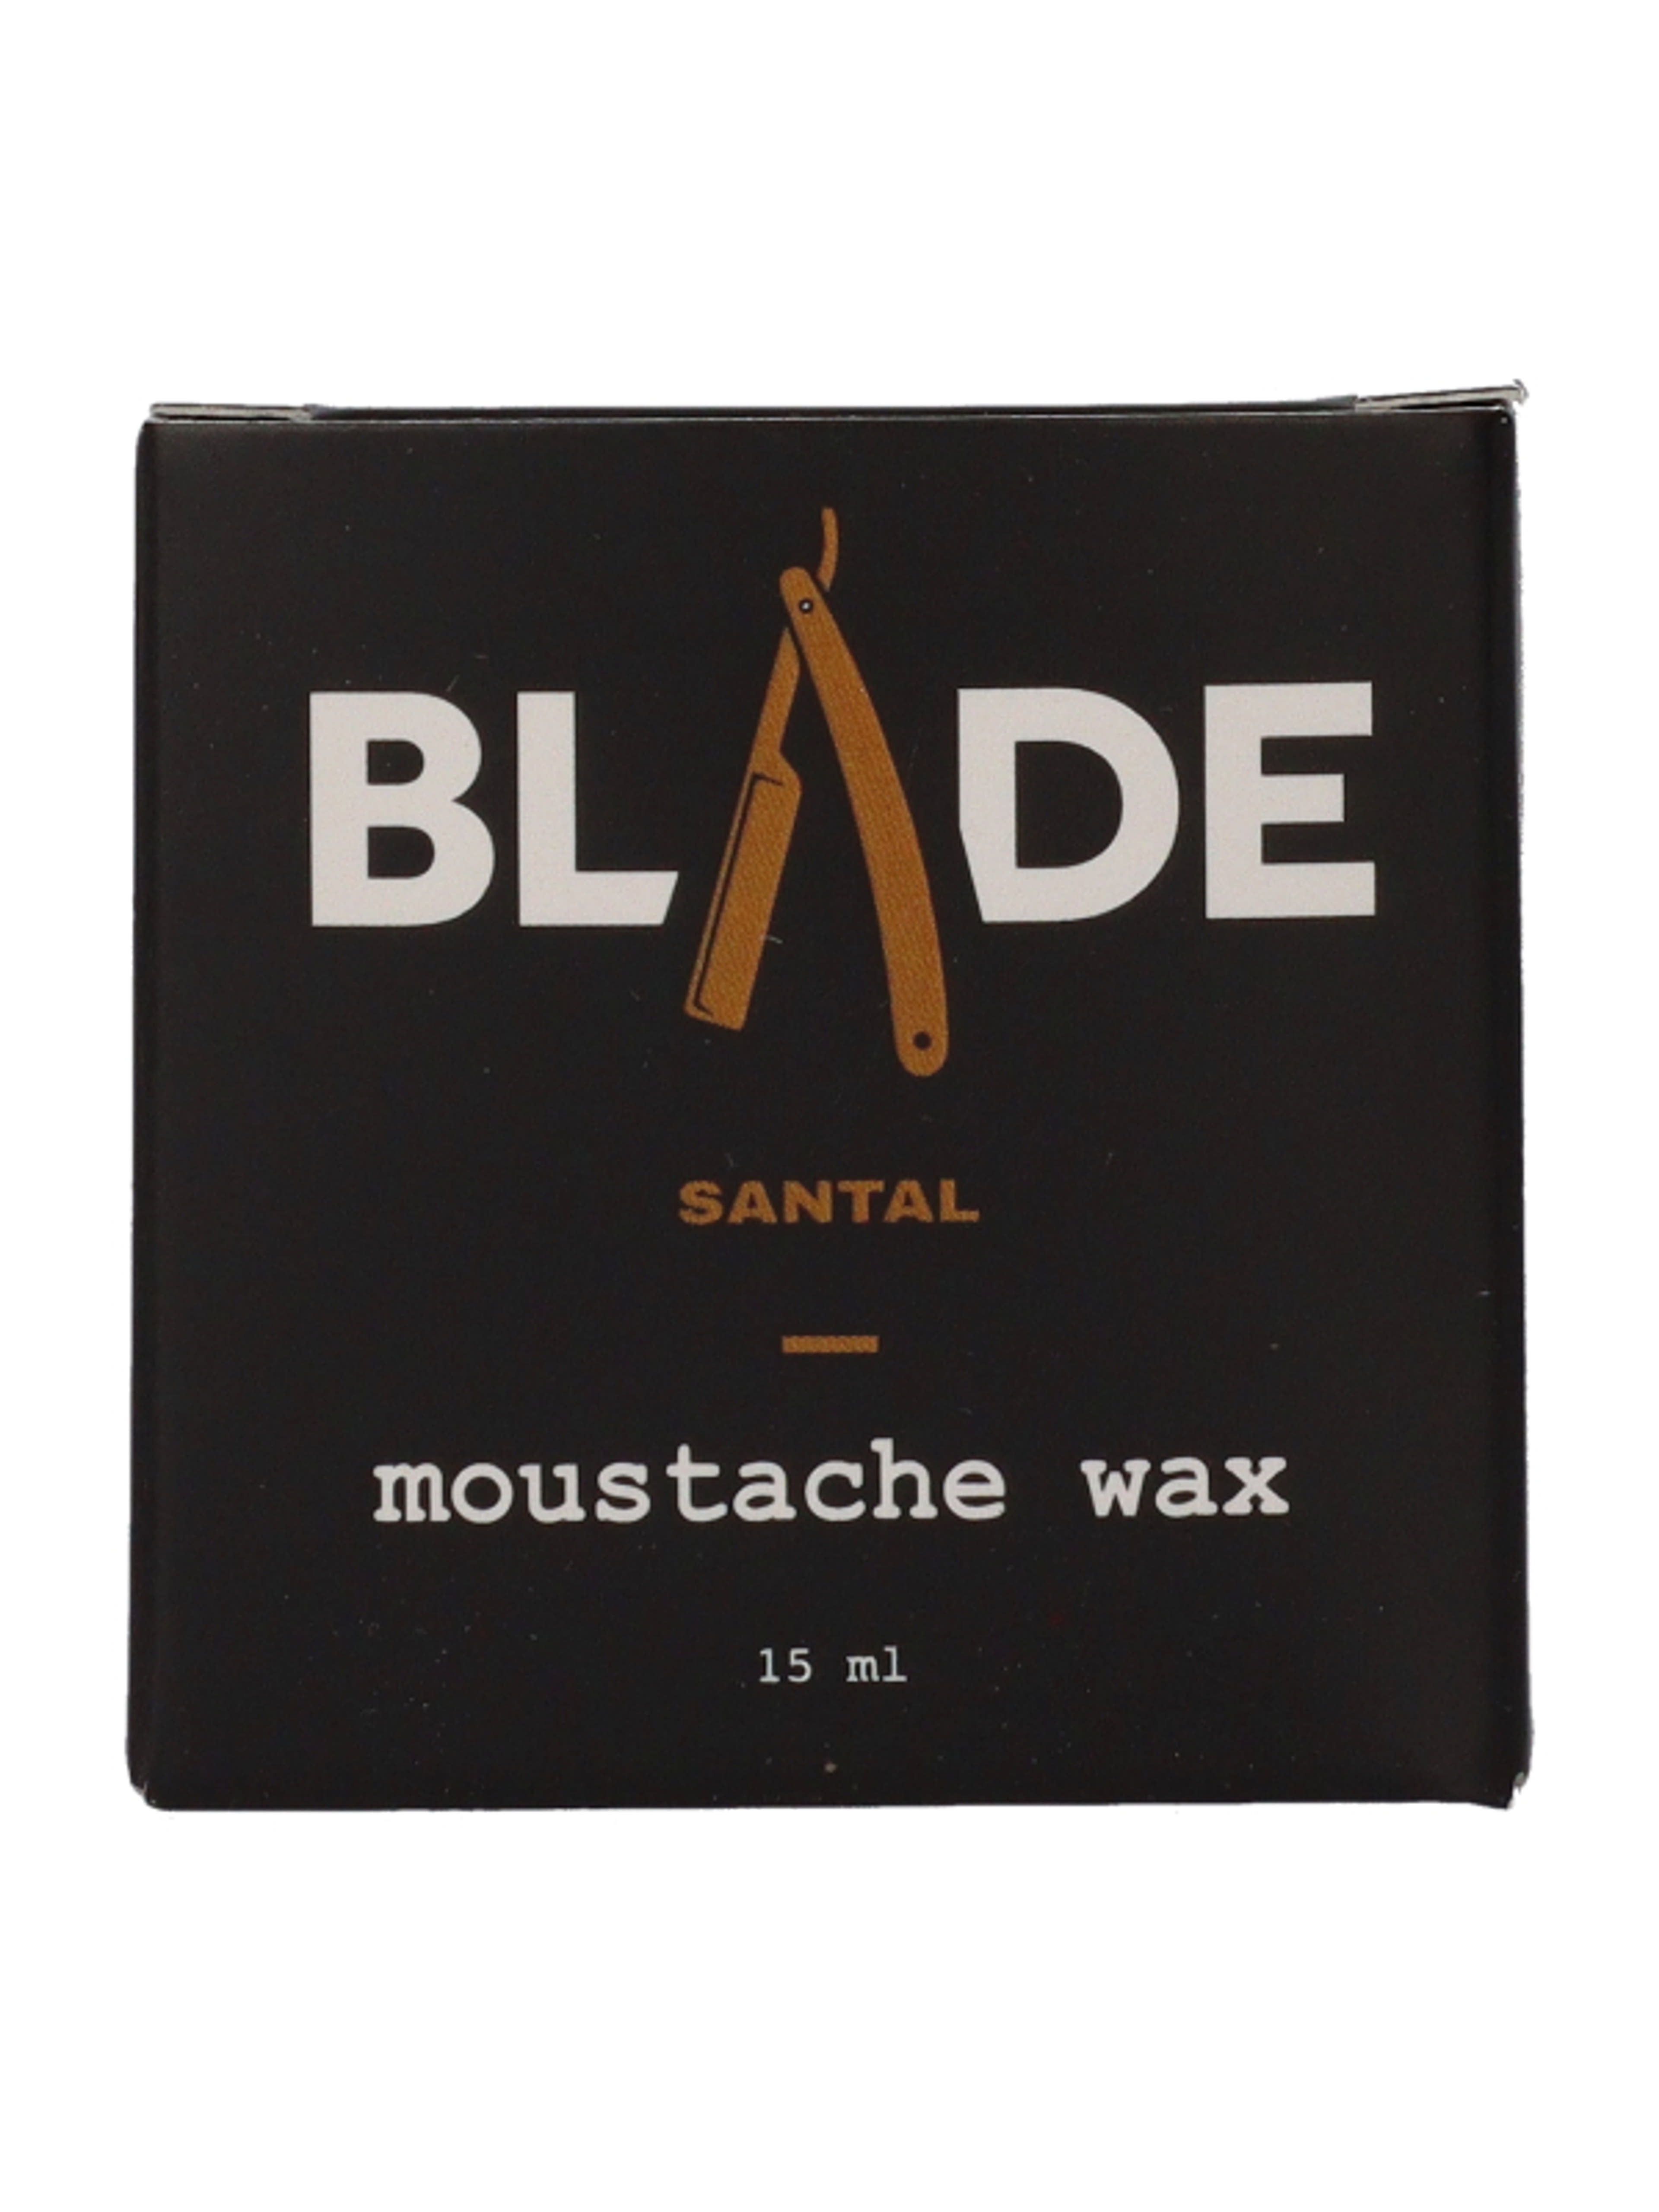 Blade bajuszwax szantál - 15 ml